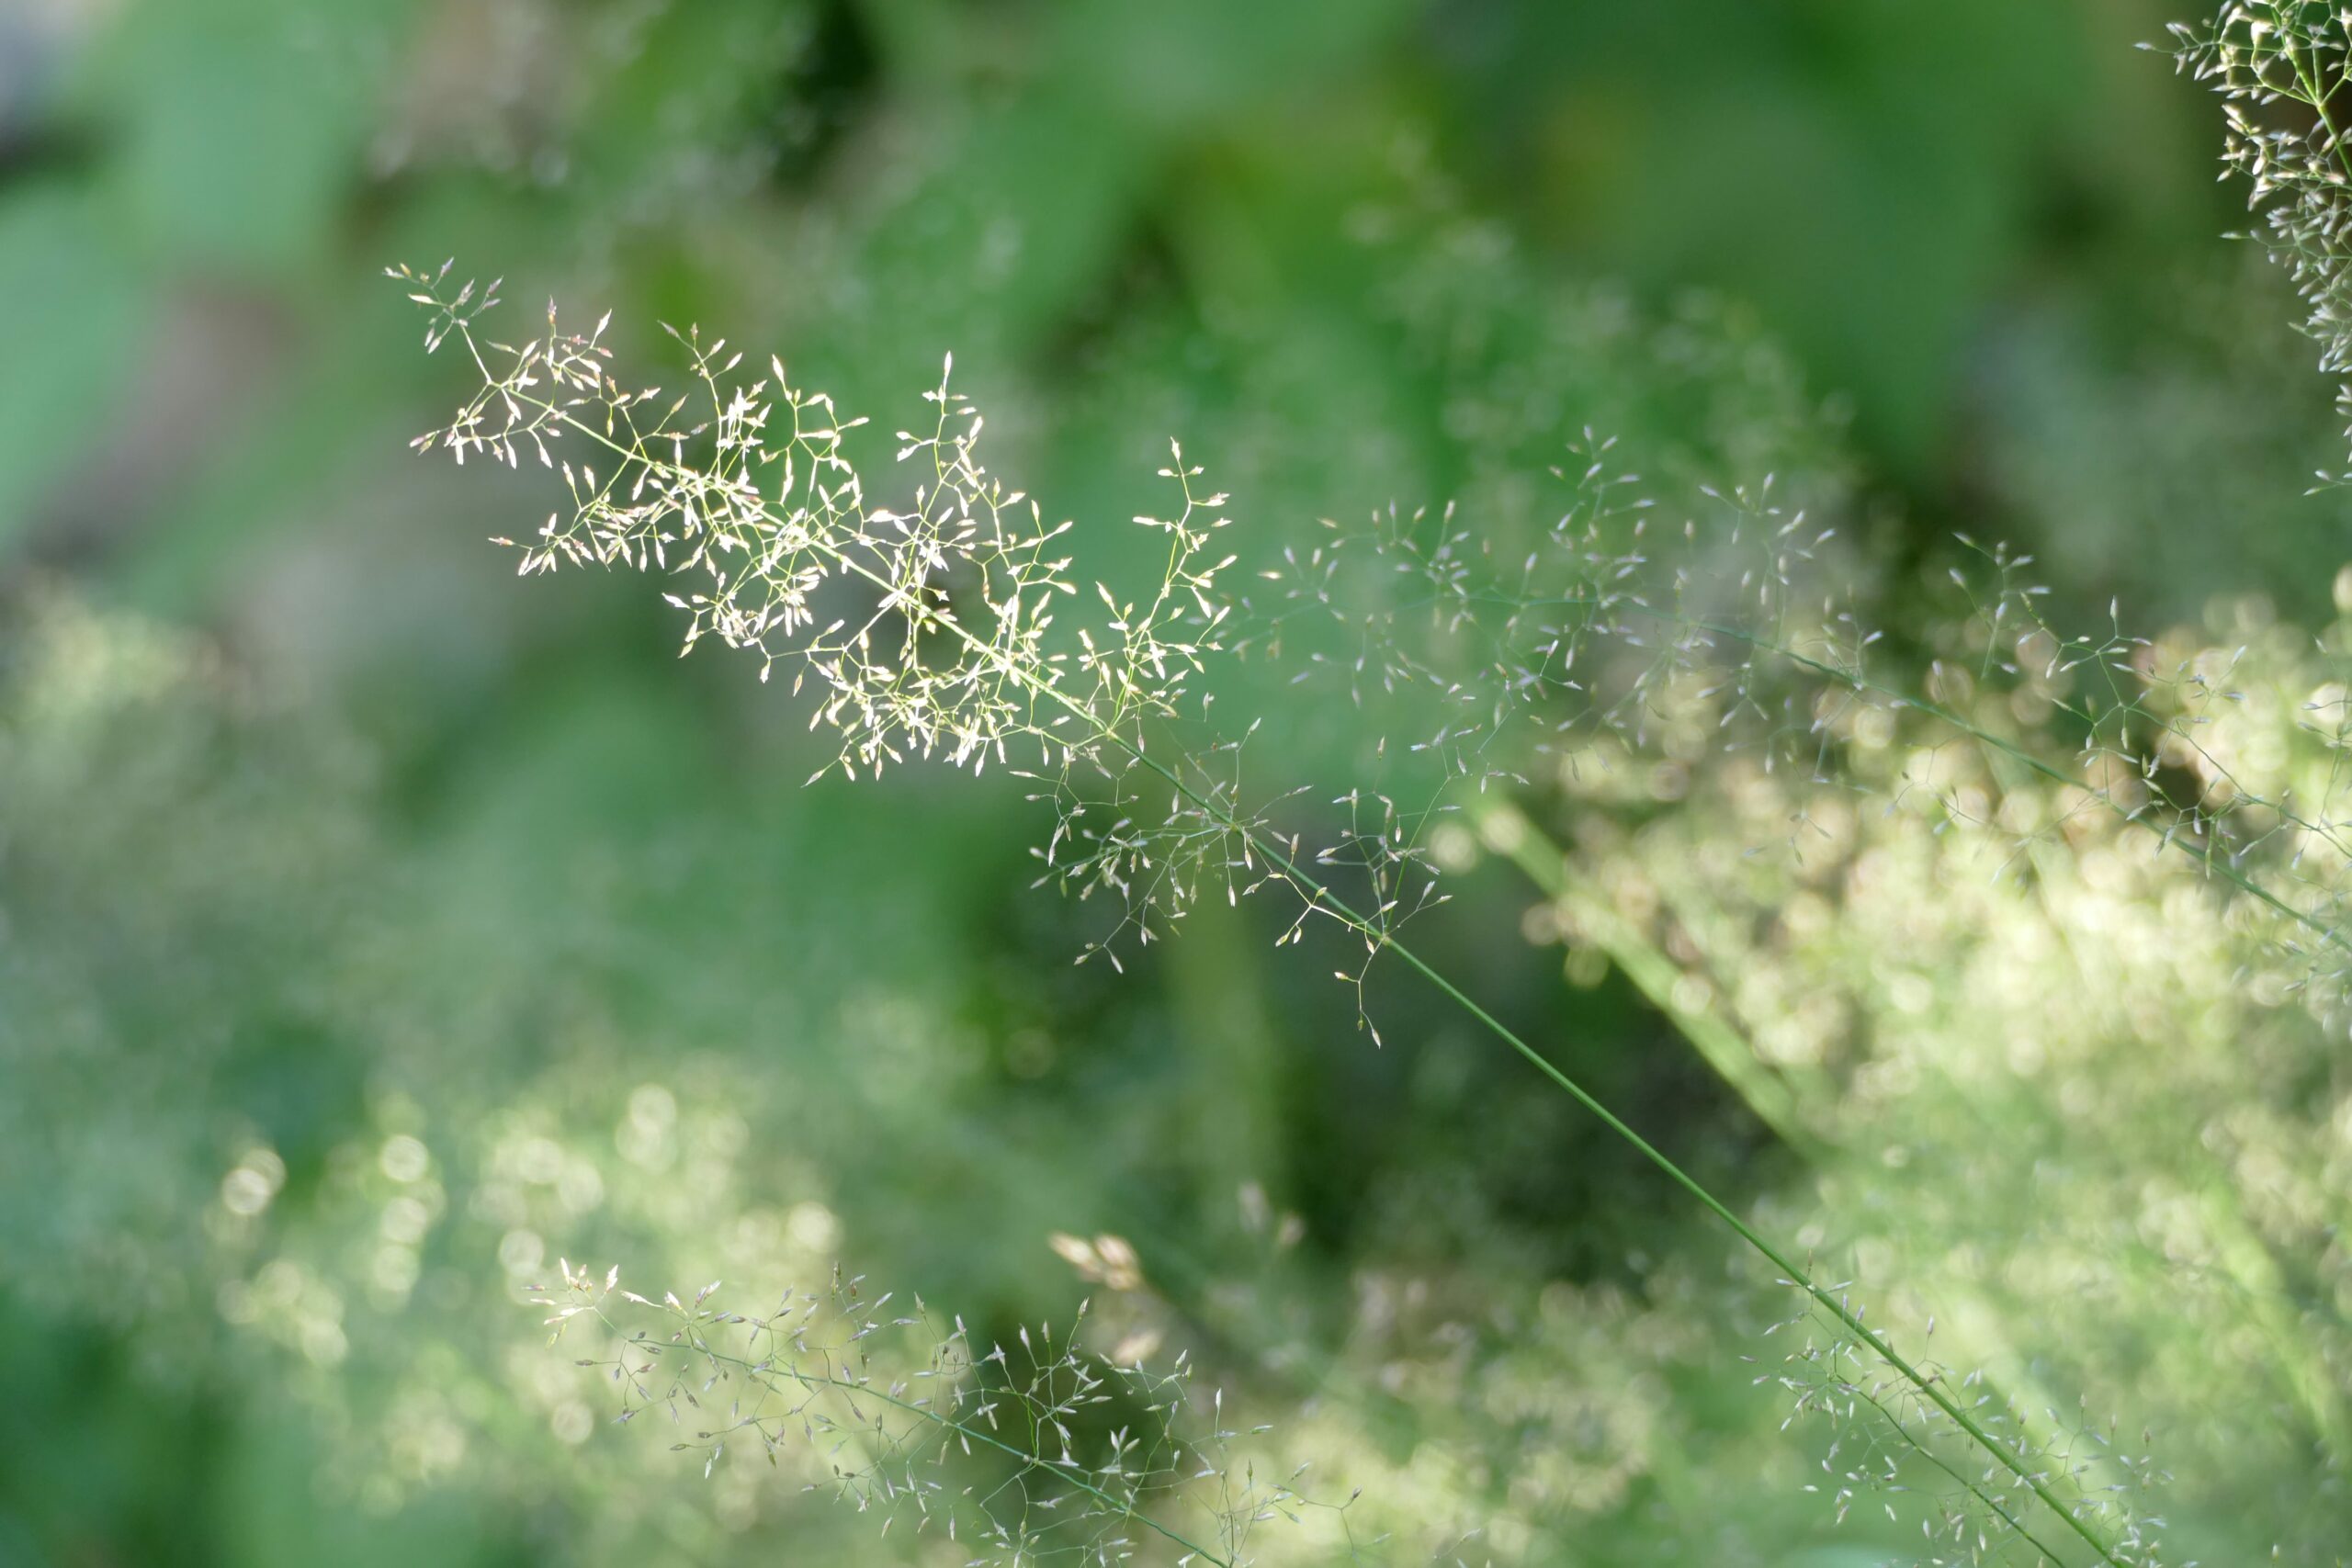 Blade of grass with pollen allergen